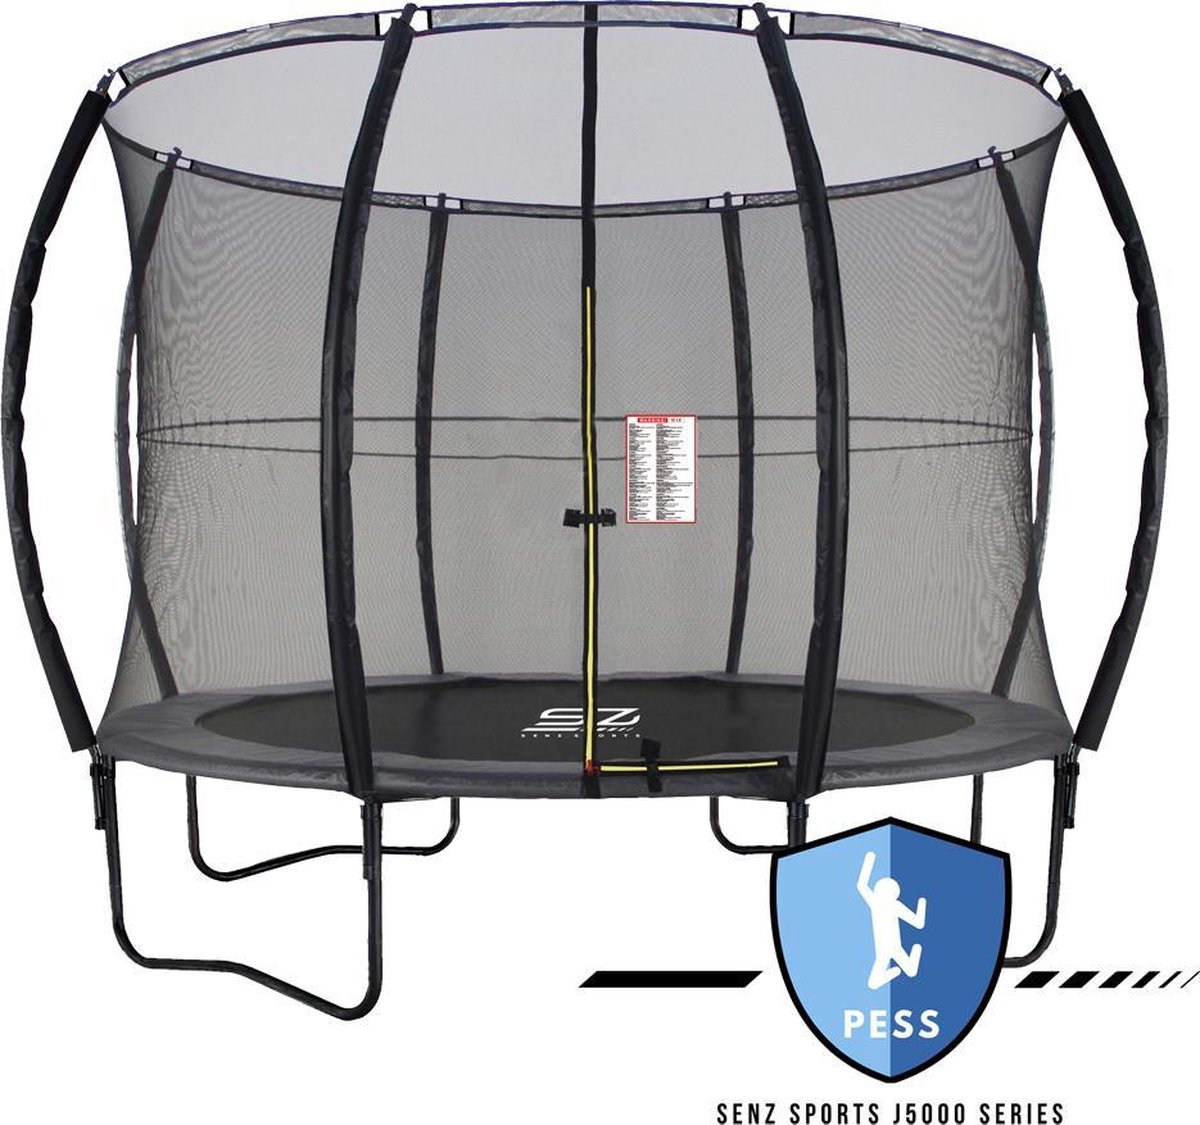 Trampoline - Senz Sports J5000 Series - 366 cm - Grijs - trampoline met elastieken